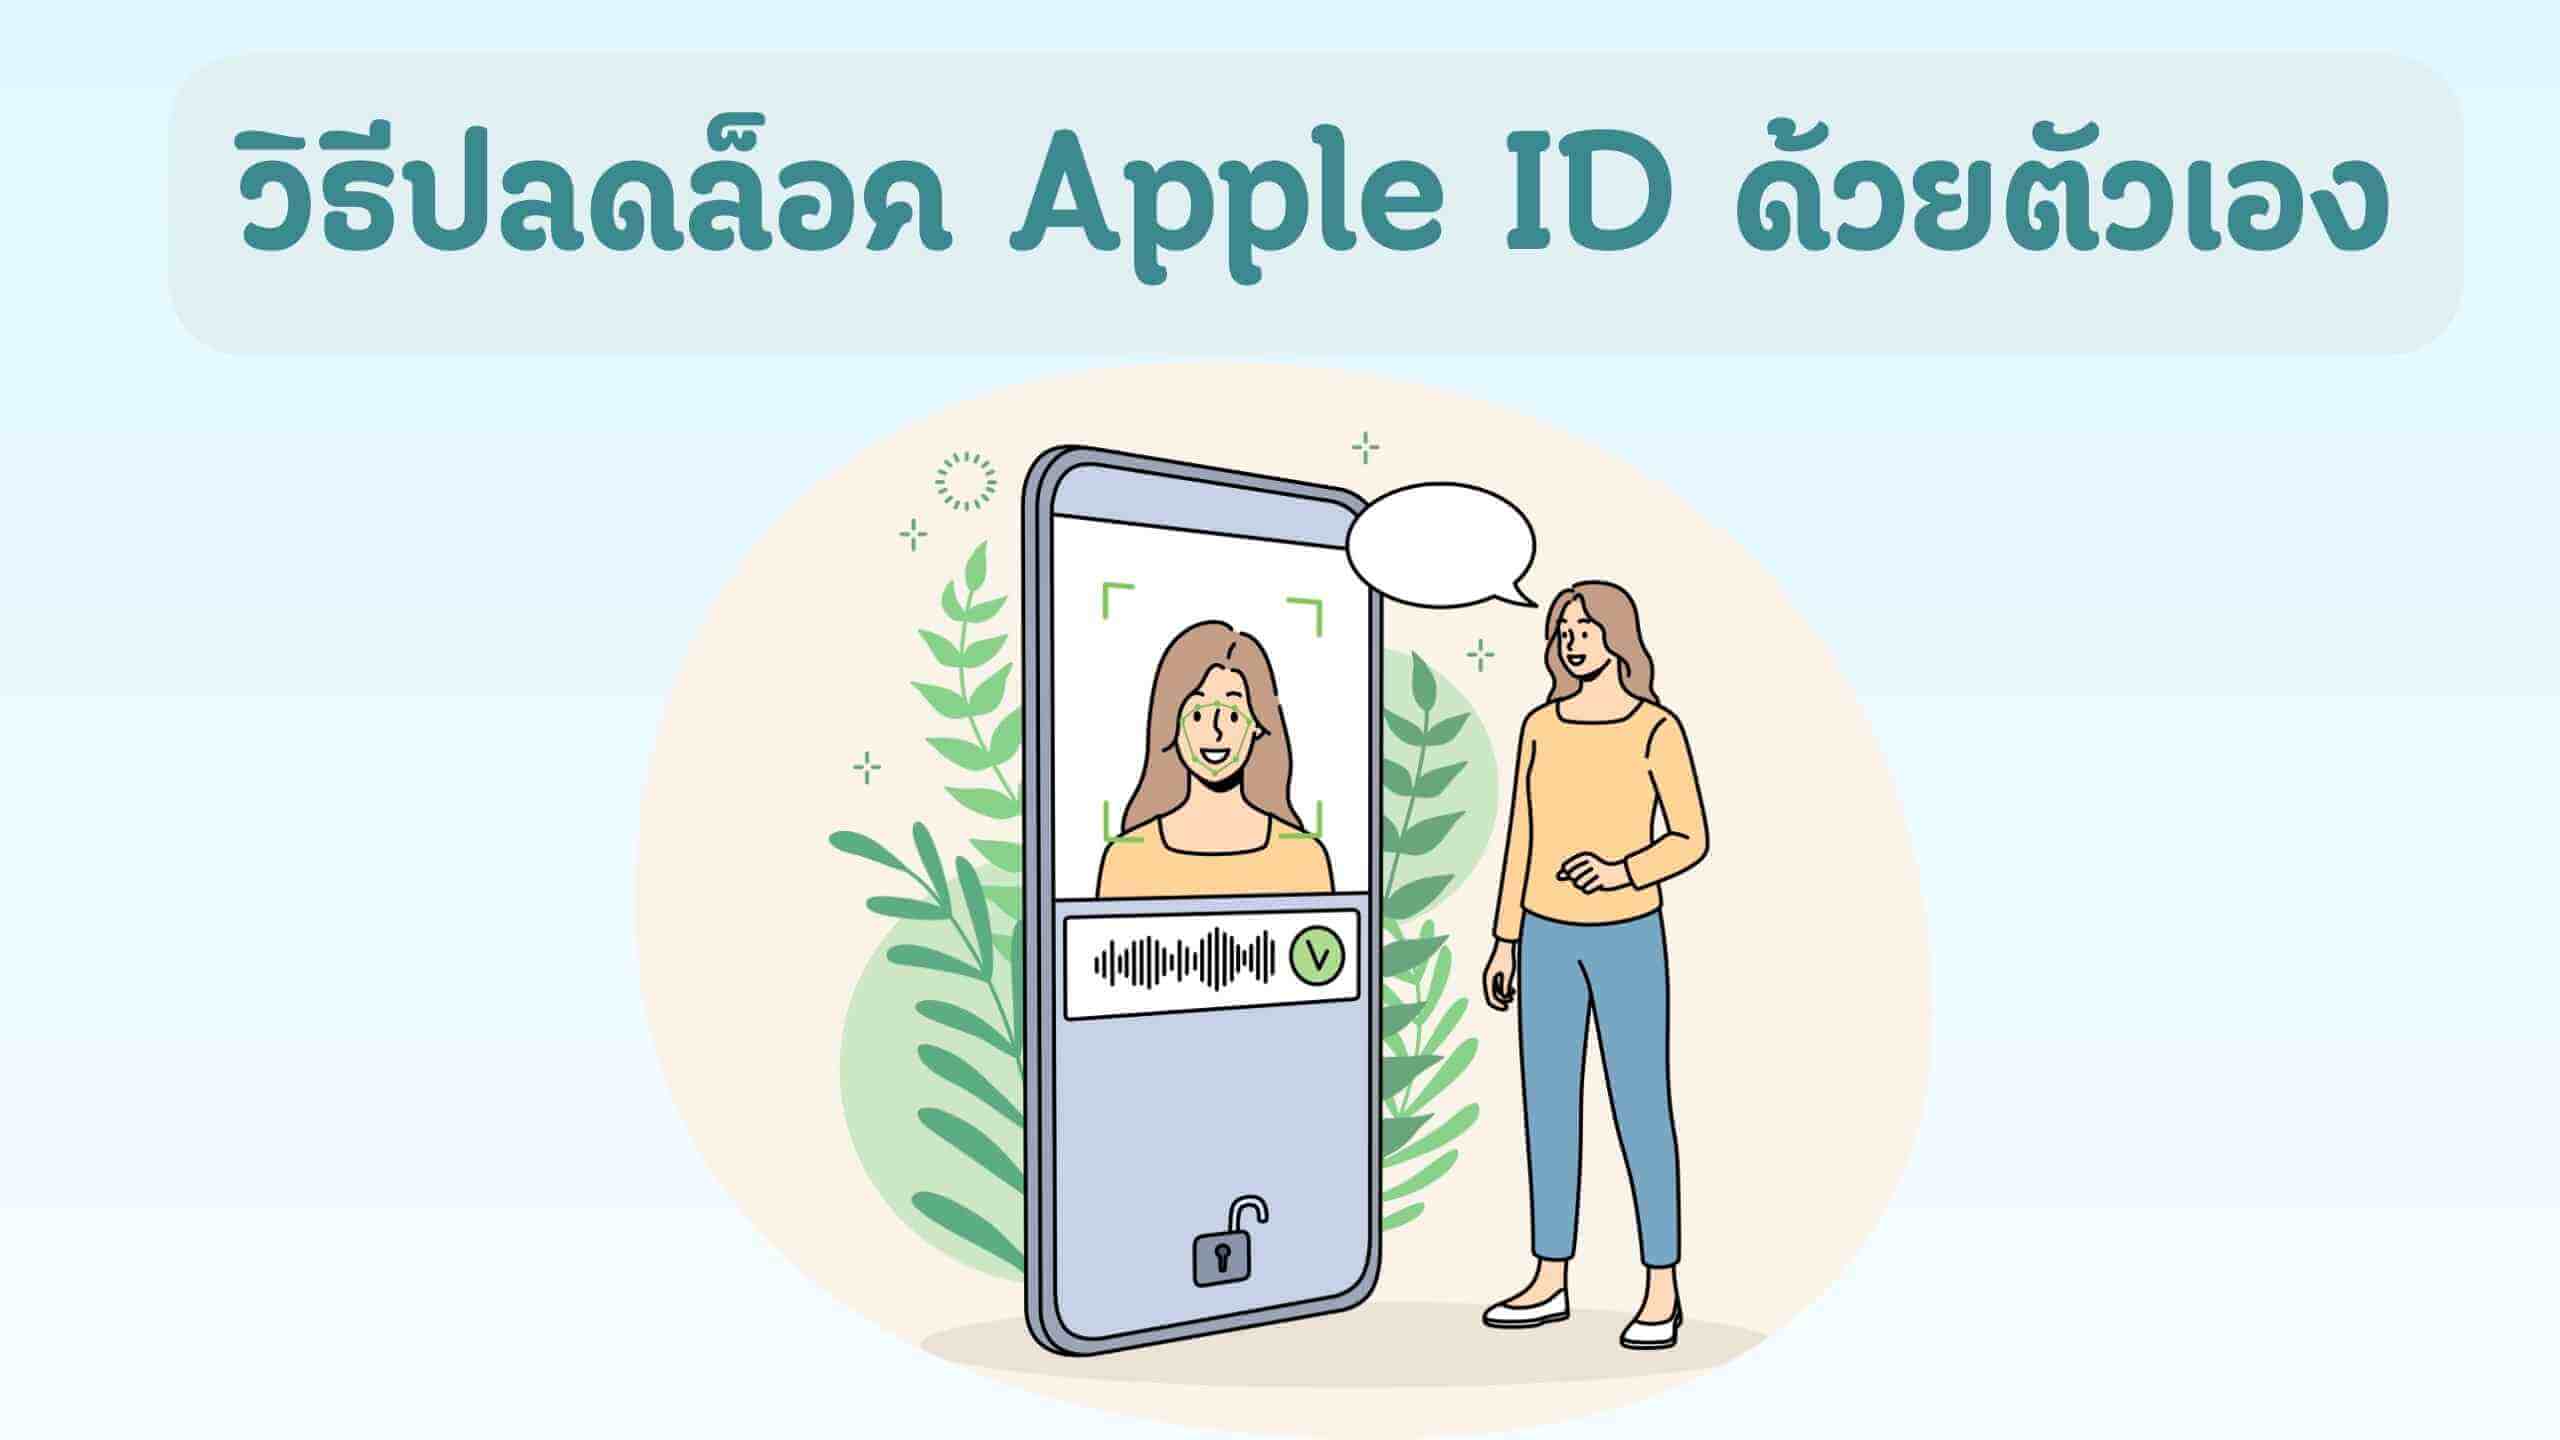 [แนะนำ] วิธีปลดล็อค Apple ID ด้วยตัวเองง่าย ๆ ไม่ยุ่งยาก!